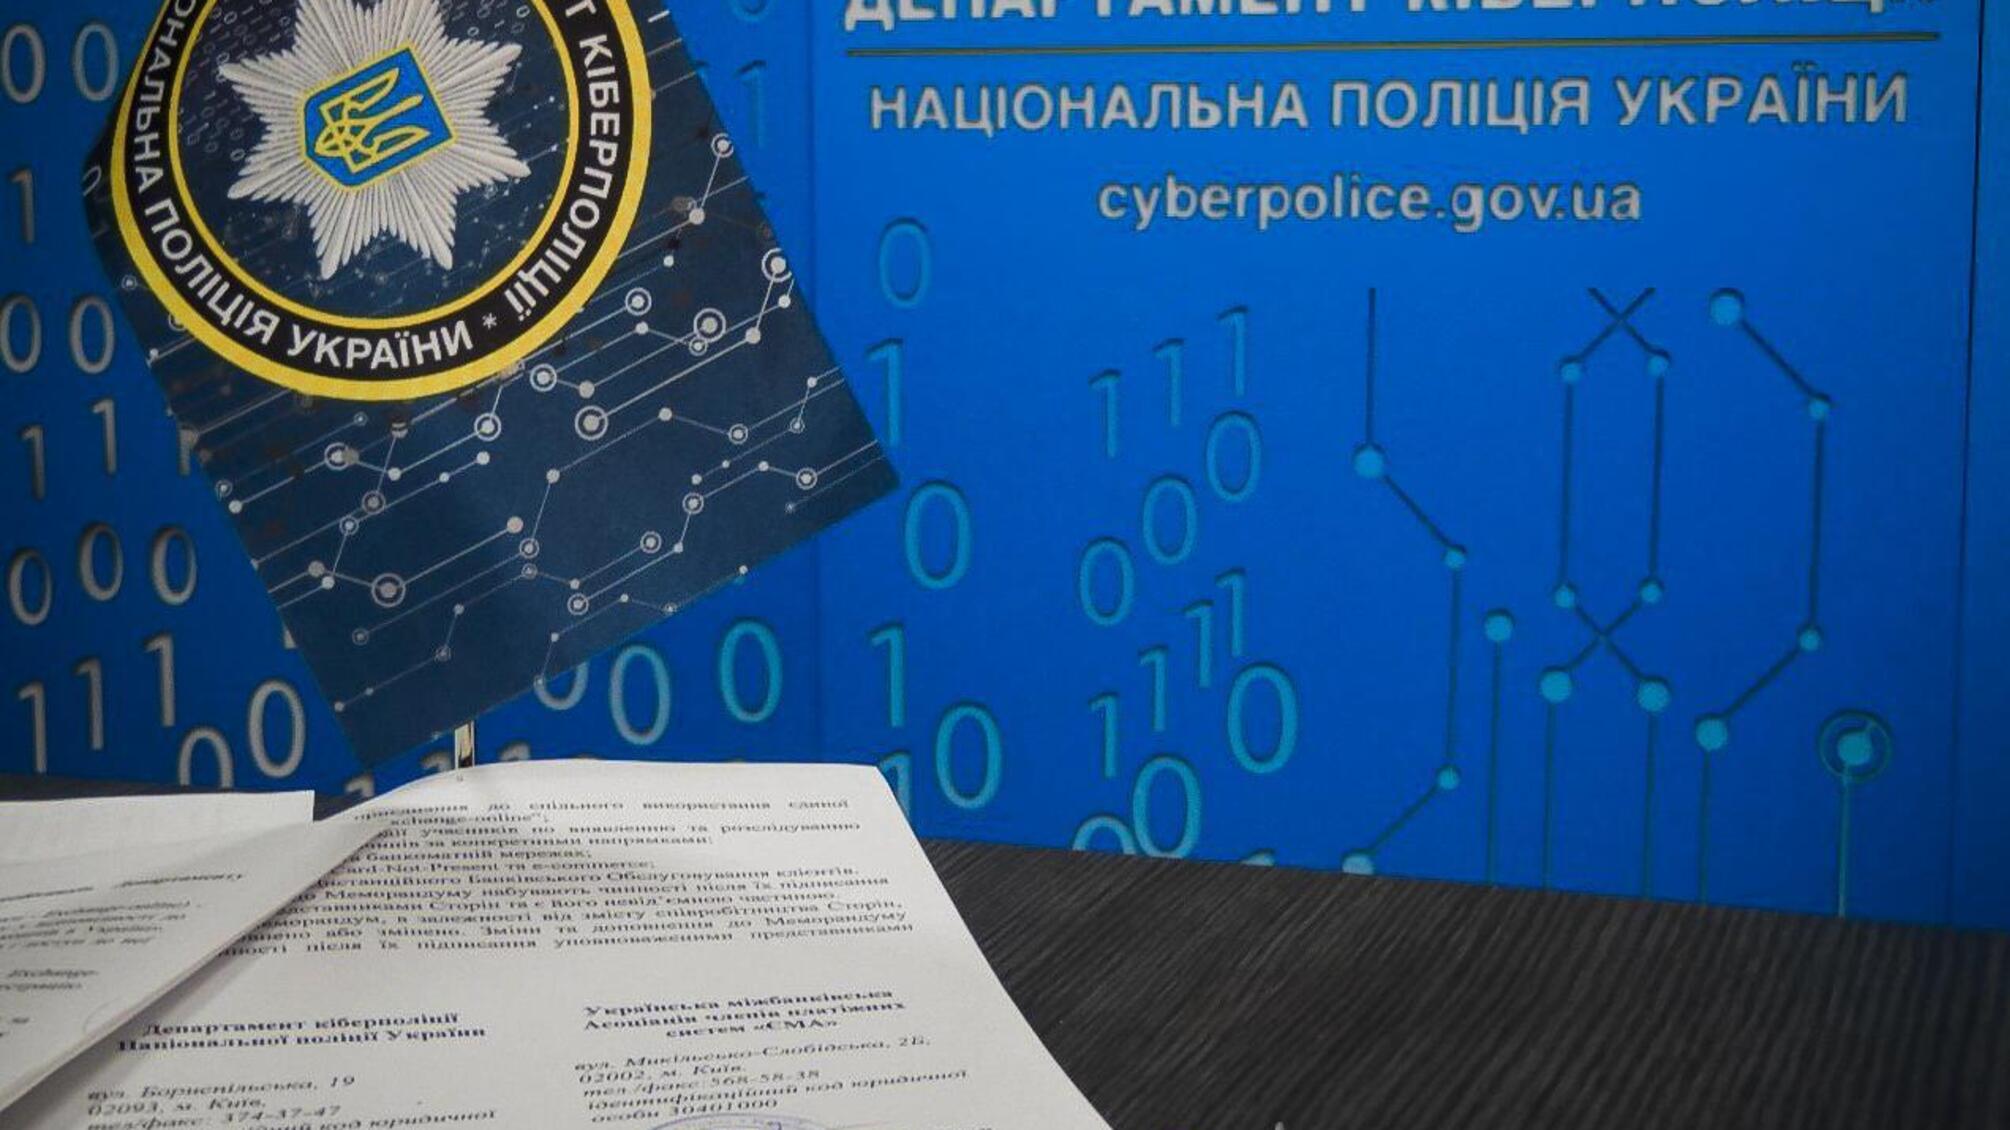 Кіберполіція підписала меморандум про співпрацю з Українською міжбанківською Асоціацією членів платіжних систем «ЄМА»